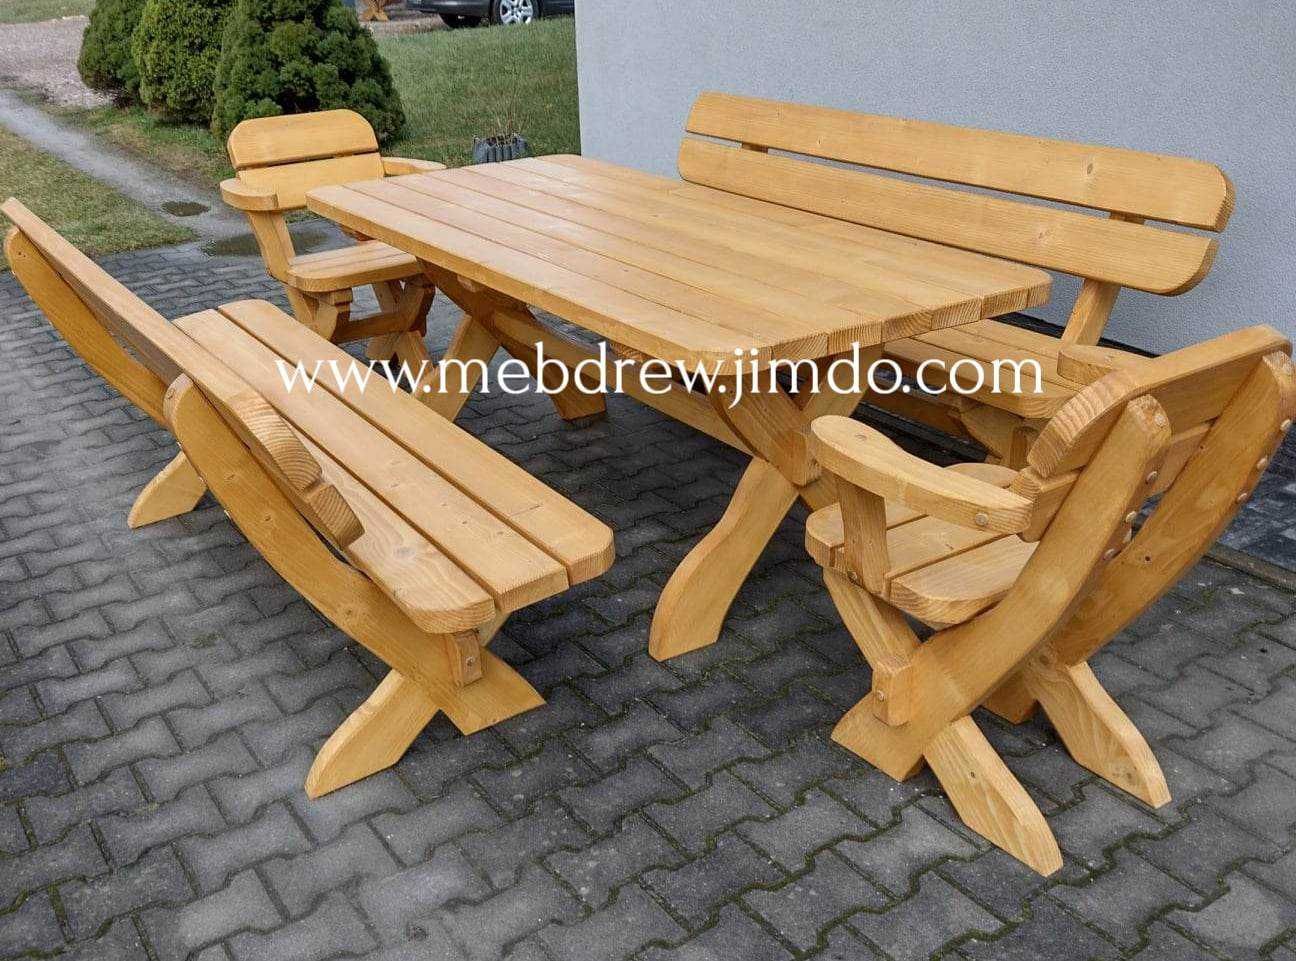 Drewniany stół ogrodowy 2 ławki 2 fotele malowany zestaw mebli